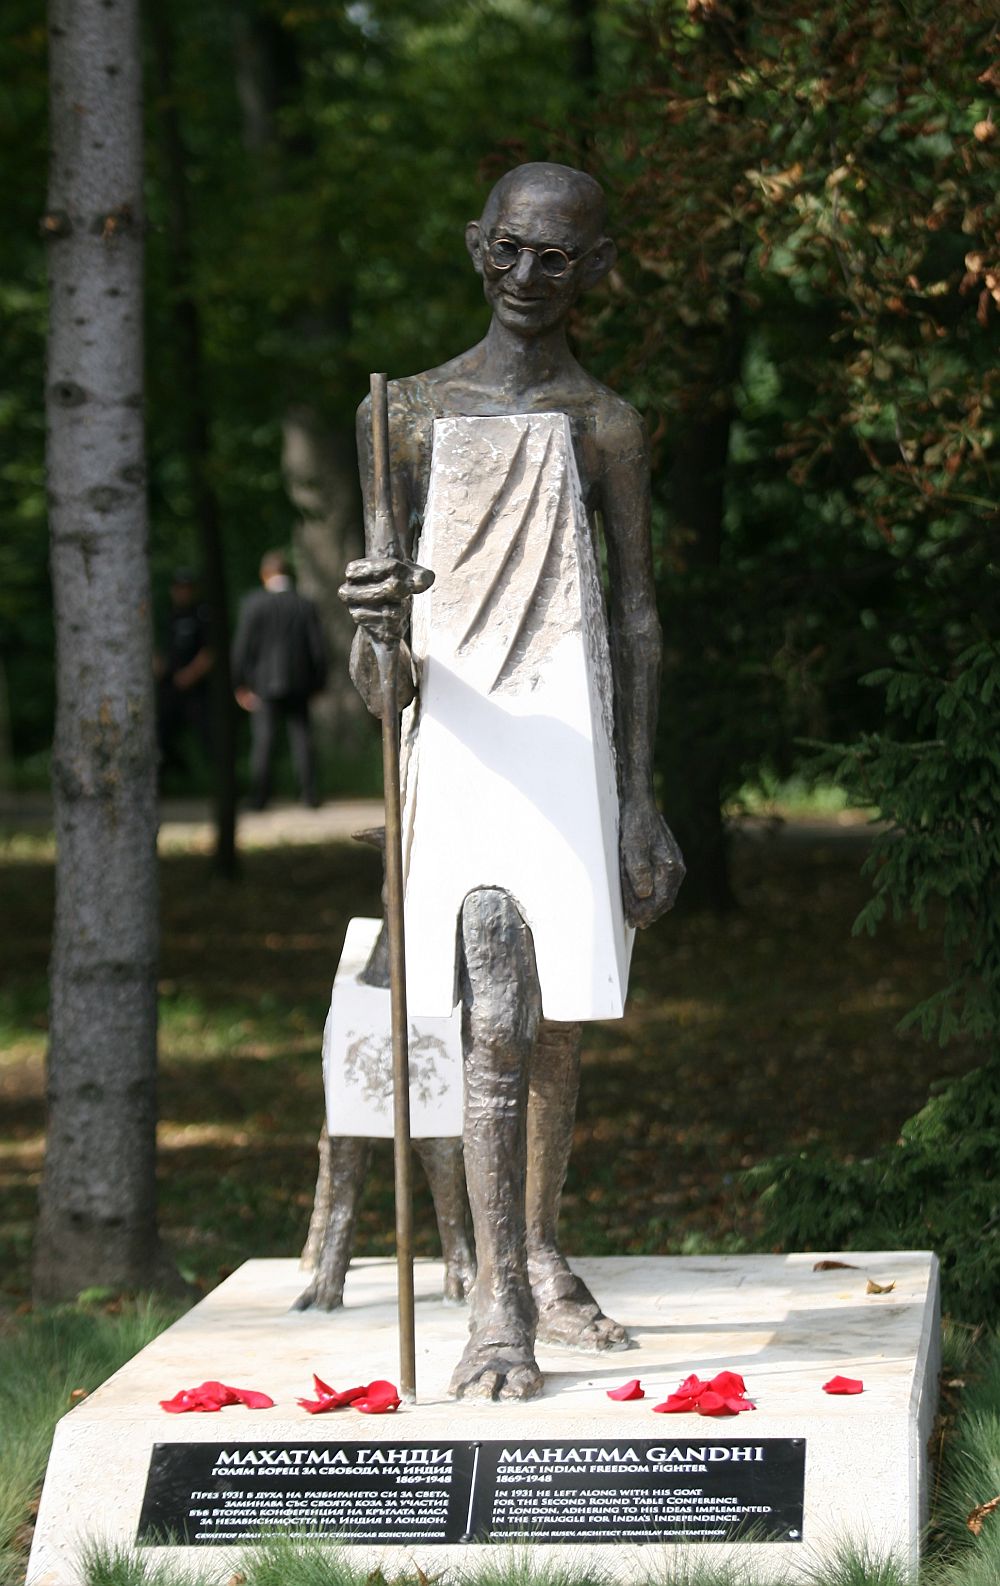 Президентът Румен Радев и индийският му колега Рам Нат Ковинд откриха в Южния парк в столицата паметник на водача на индийското движение за независимост Махатма Ганди